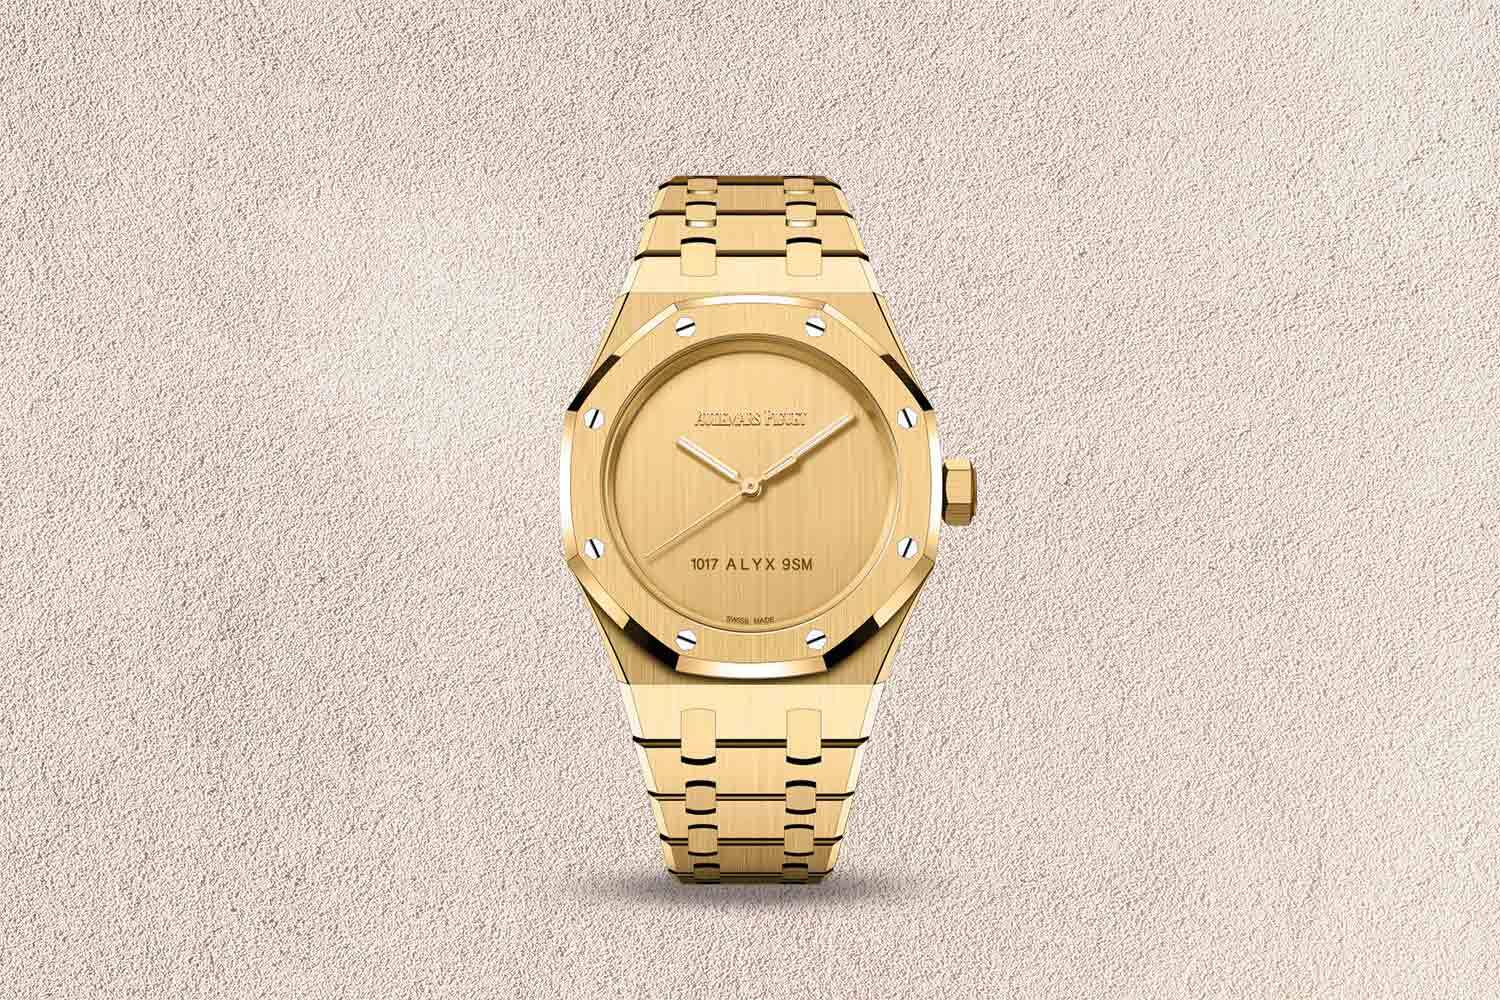 A golden watch